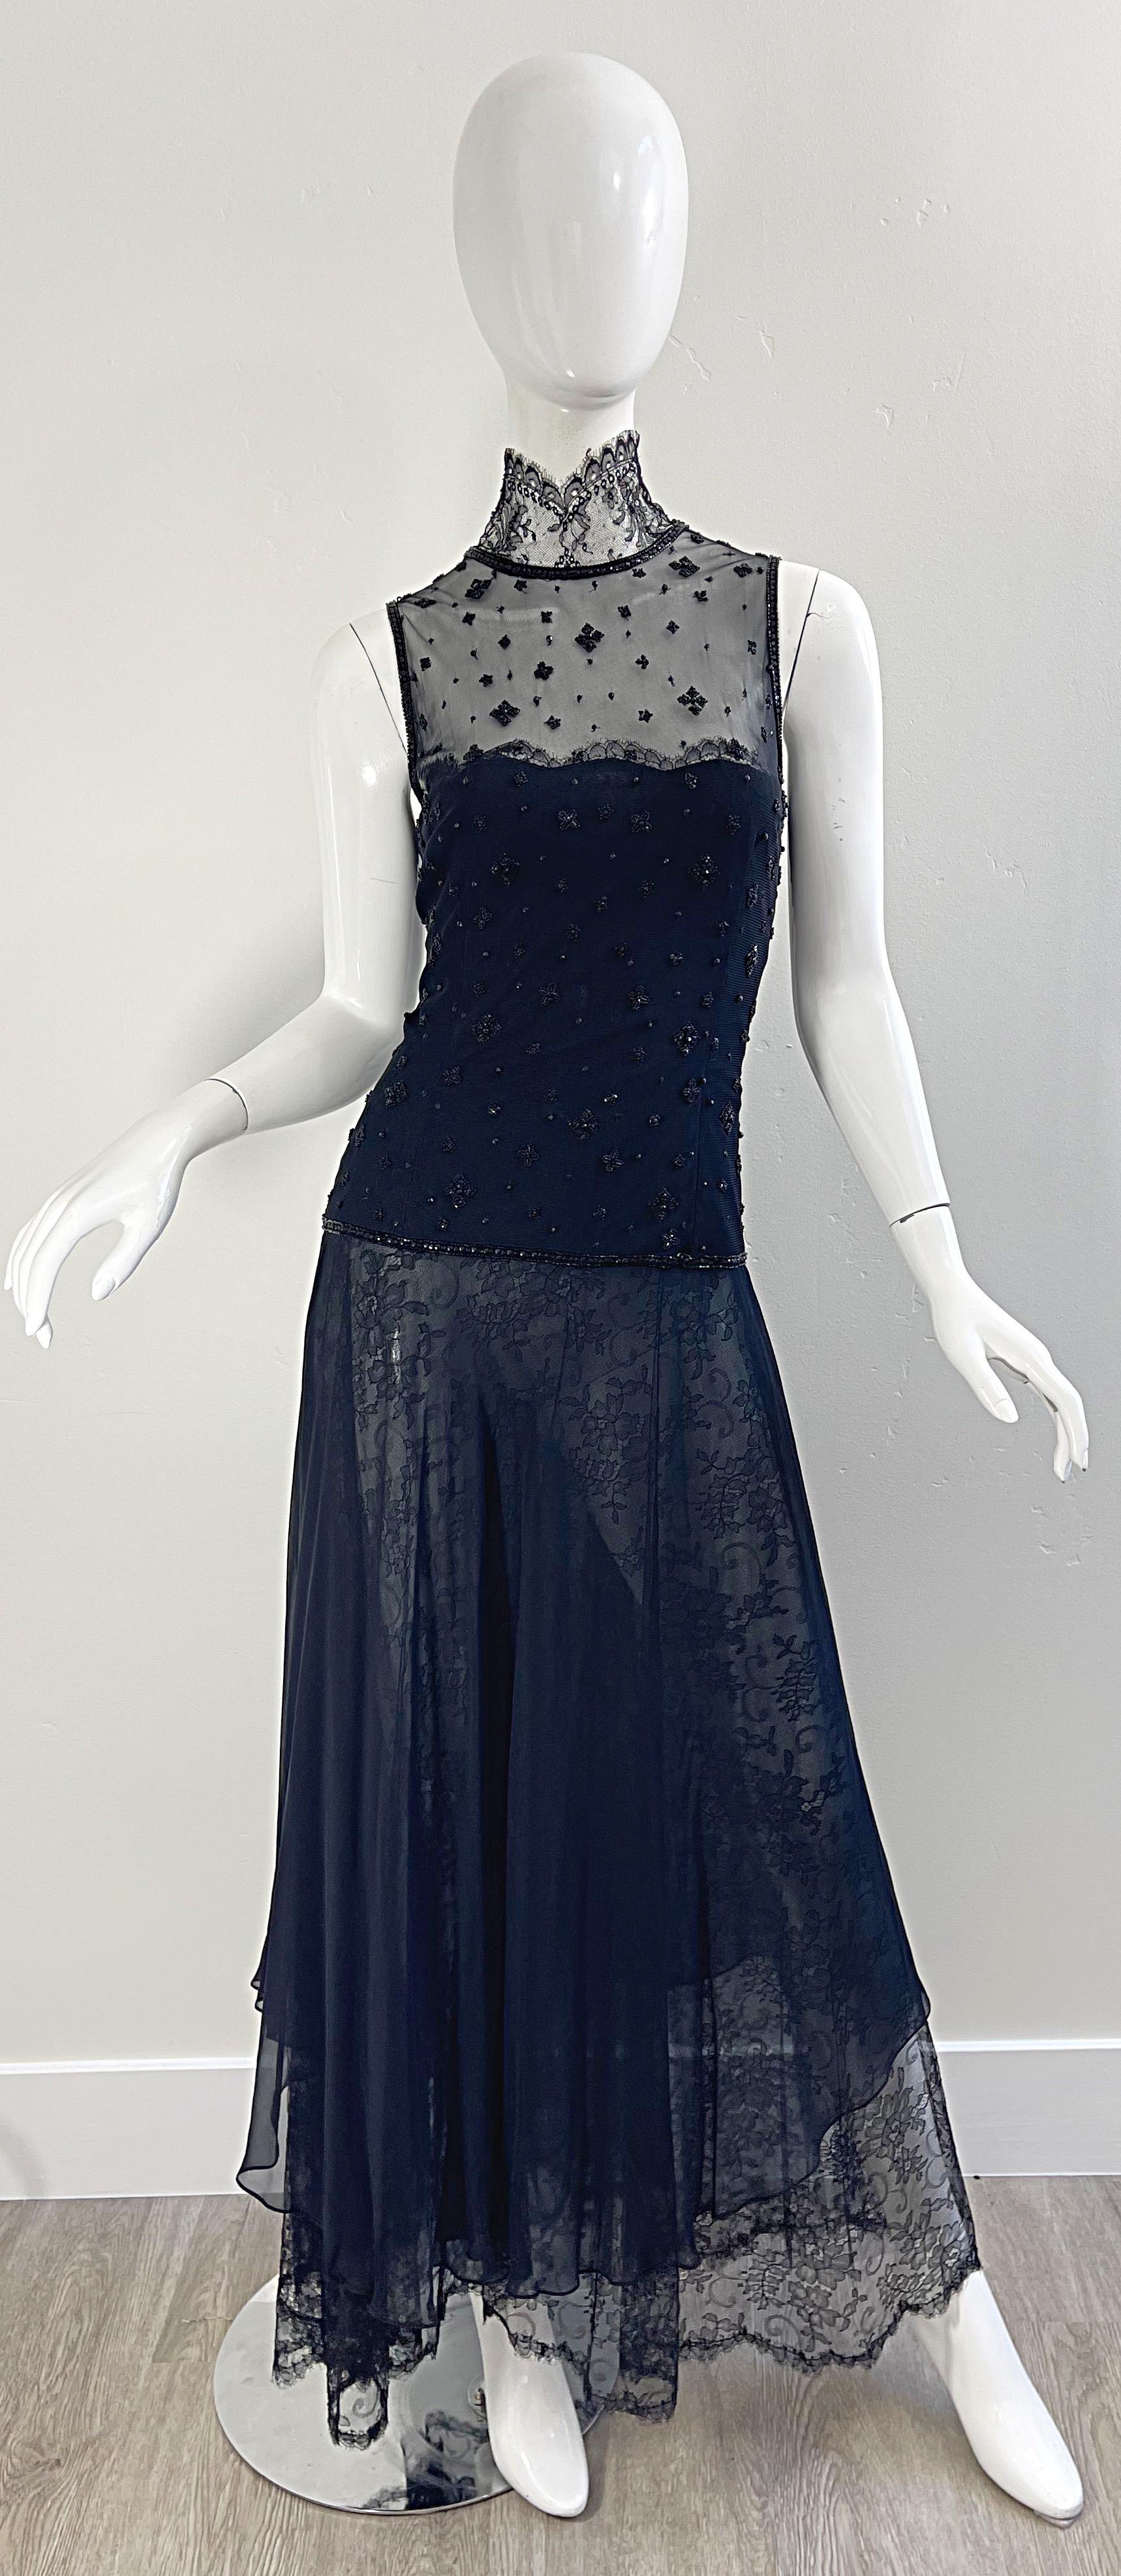 Exquise robe de soirée vintage des années 1990 OSCAR DE LA RENTA pour SAKS 5th AVE Couture en mousseline de soie noire et dentelle chattily semi-transparente ! Cette magnifique robe a fait l'objet de tant d'attention aux détails. Plusieurs couches